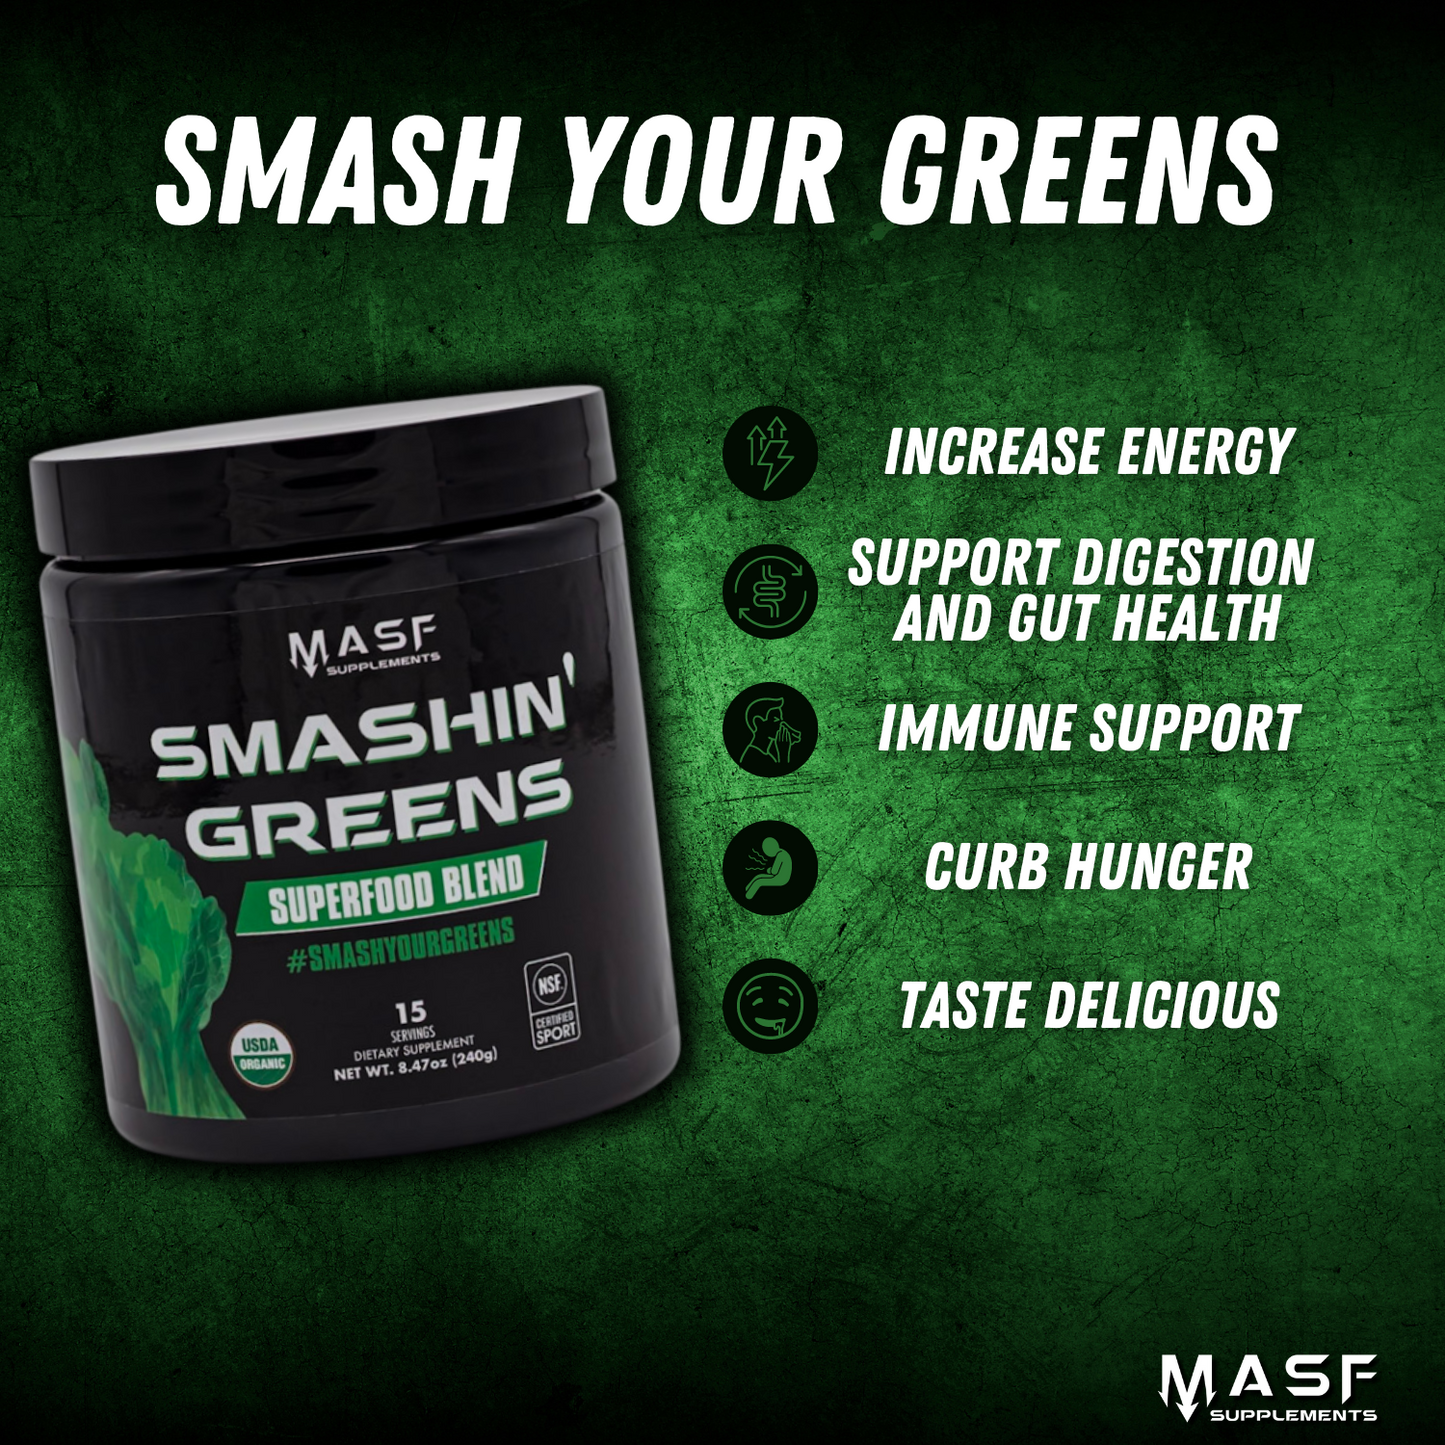 NEW Smashin' Greens